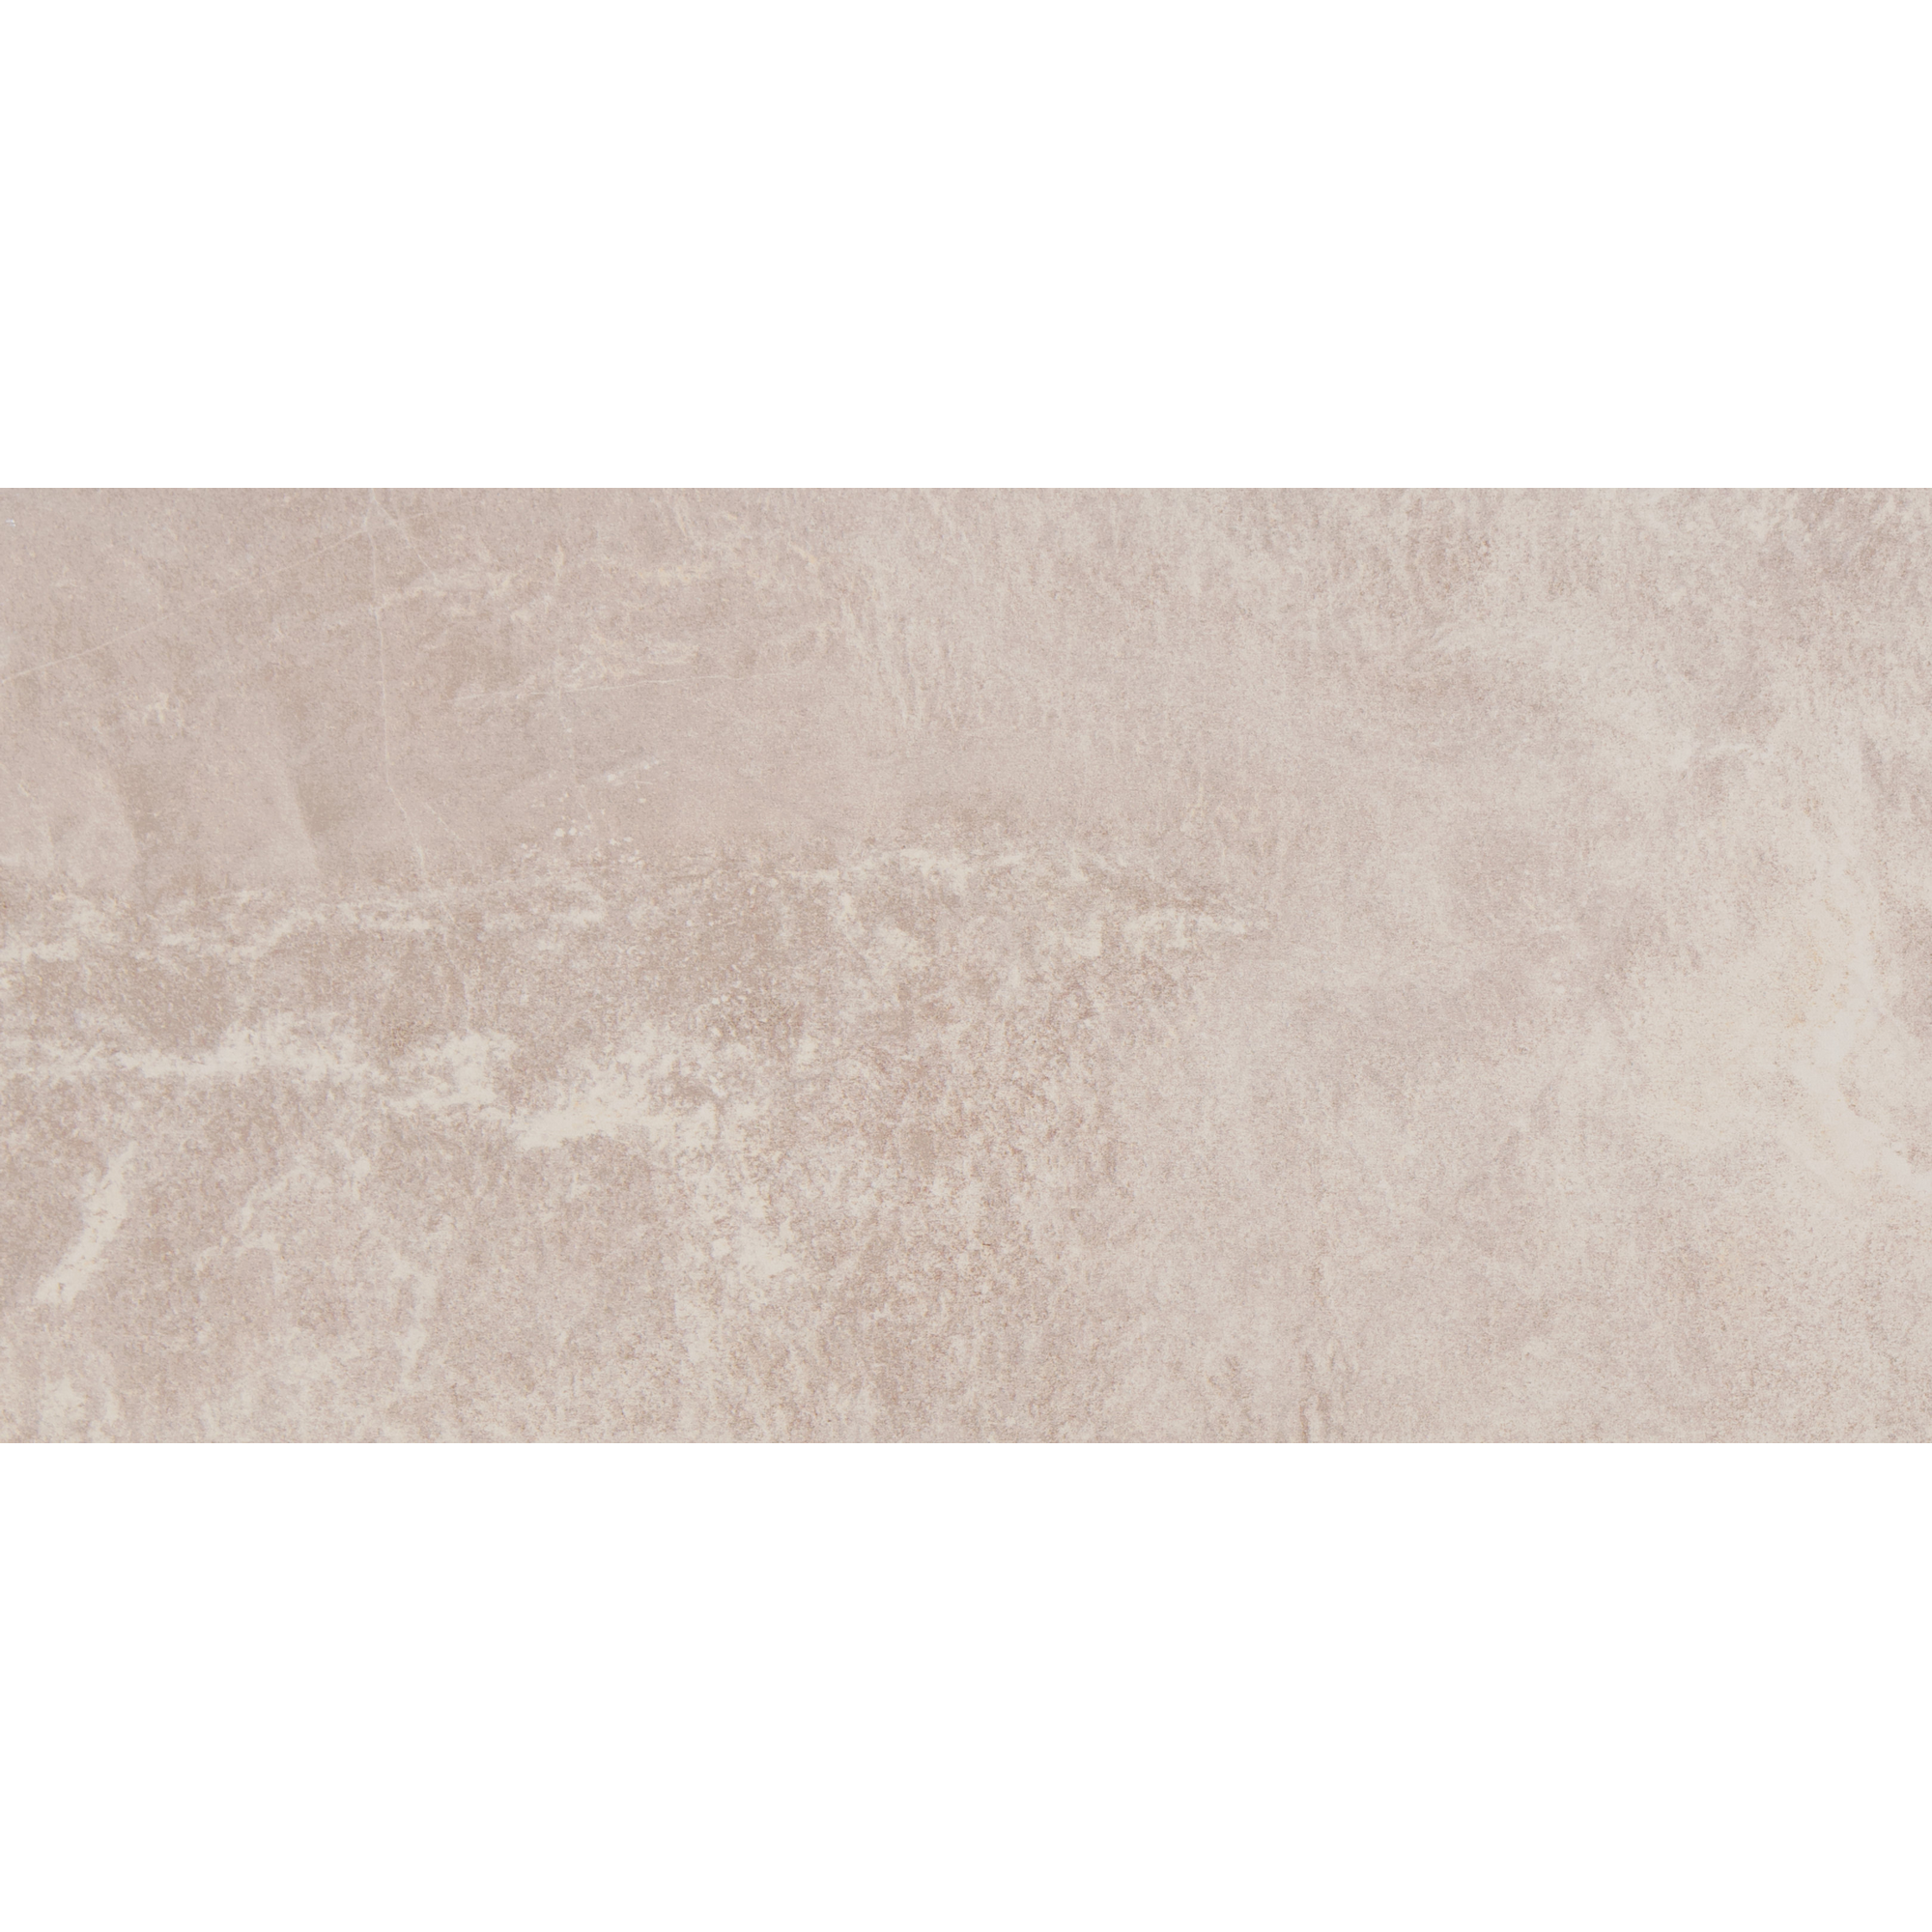 Bodenfliese 'Tempio' Feinsteinzeug beige 30,2 x 60,4 cm + product picture